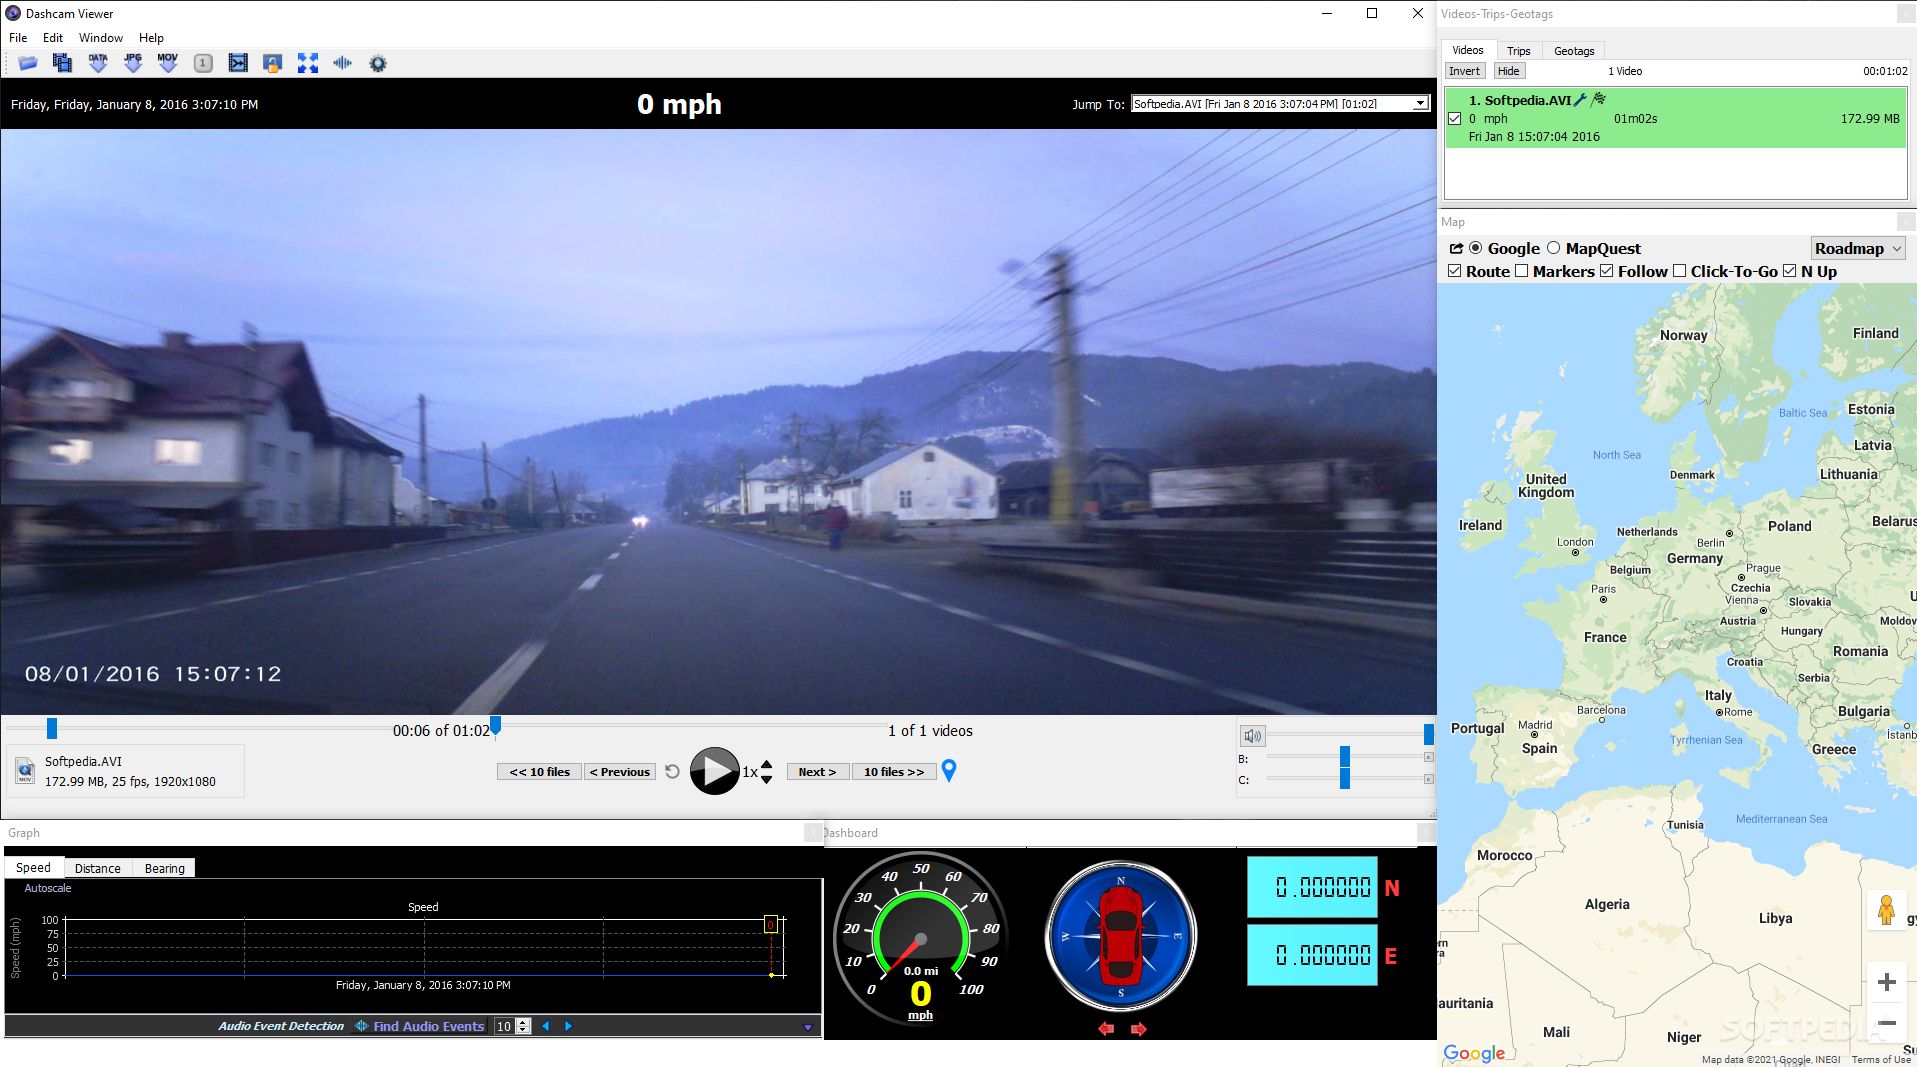 dashcam viewer software